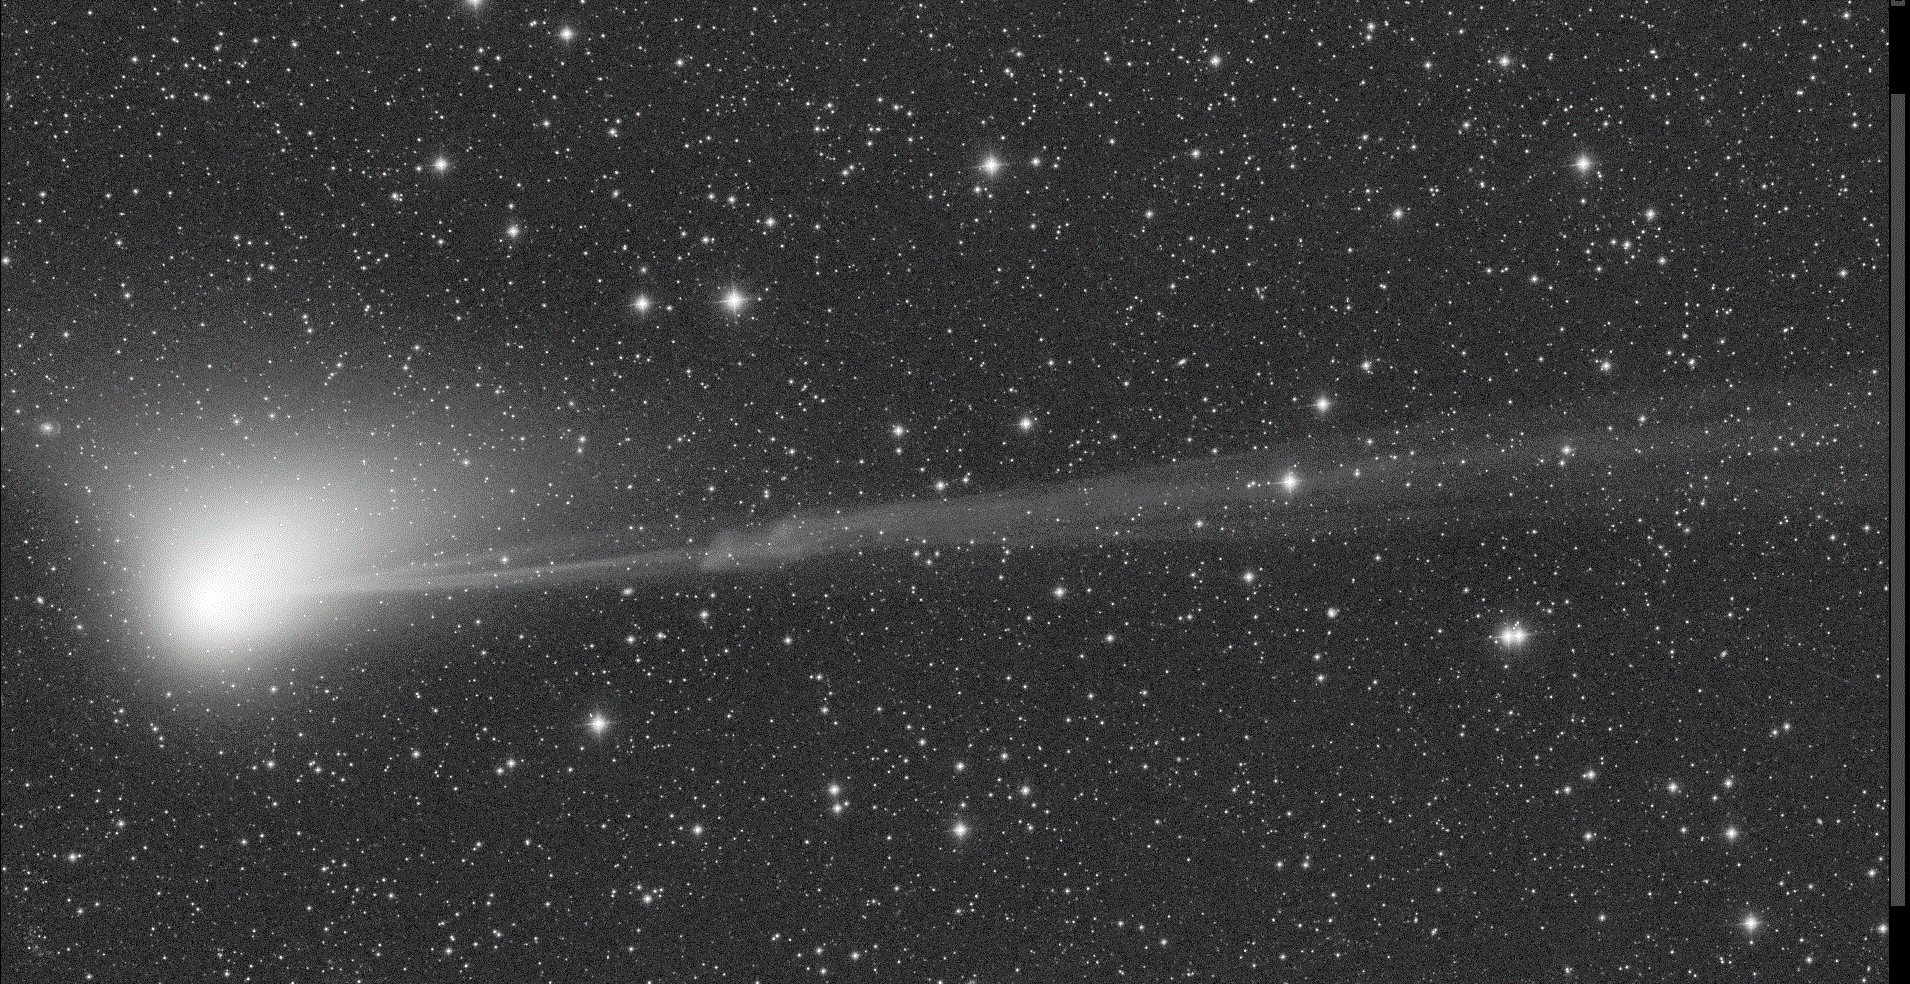 Eine Animation zeigt einen Kometen, dessen Ionenschweif sich von links nach rechts erstreckt. Verdichtungen im Schweif bewegen sich rasch vom Kometen weg.